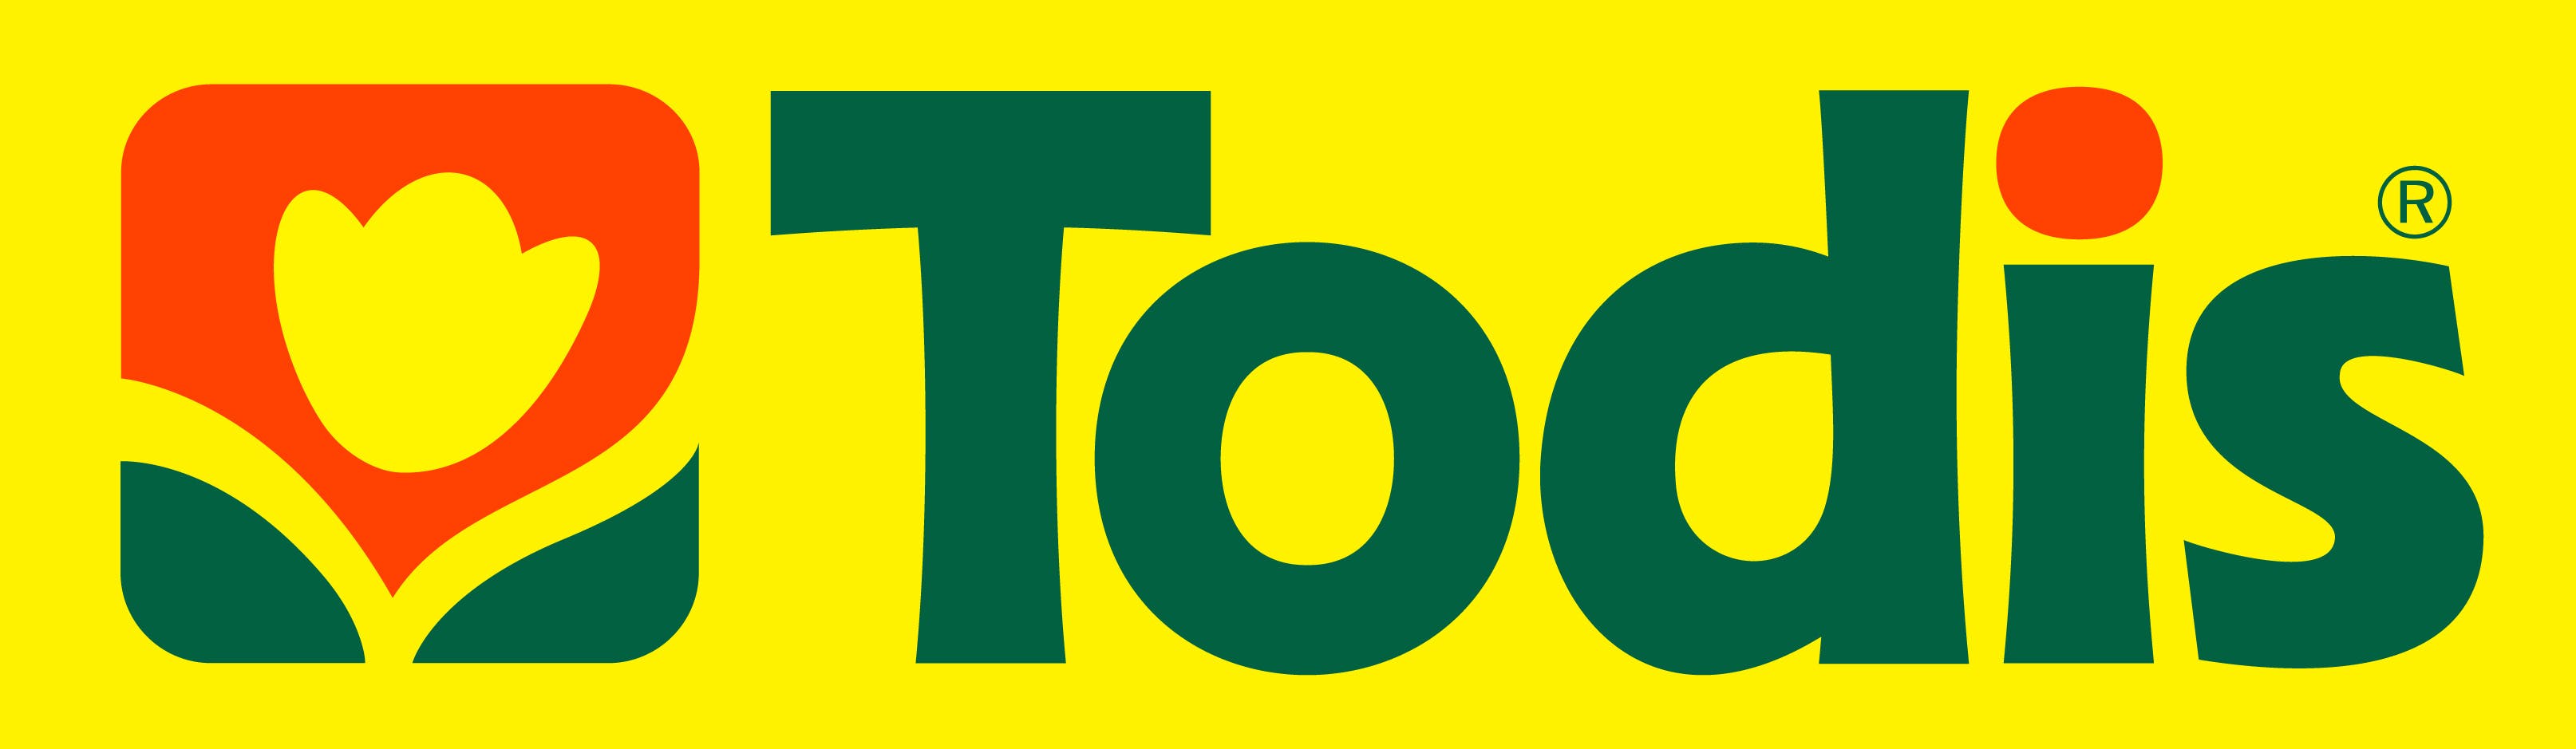 todis logo